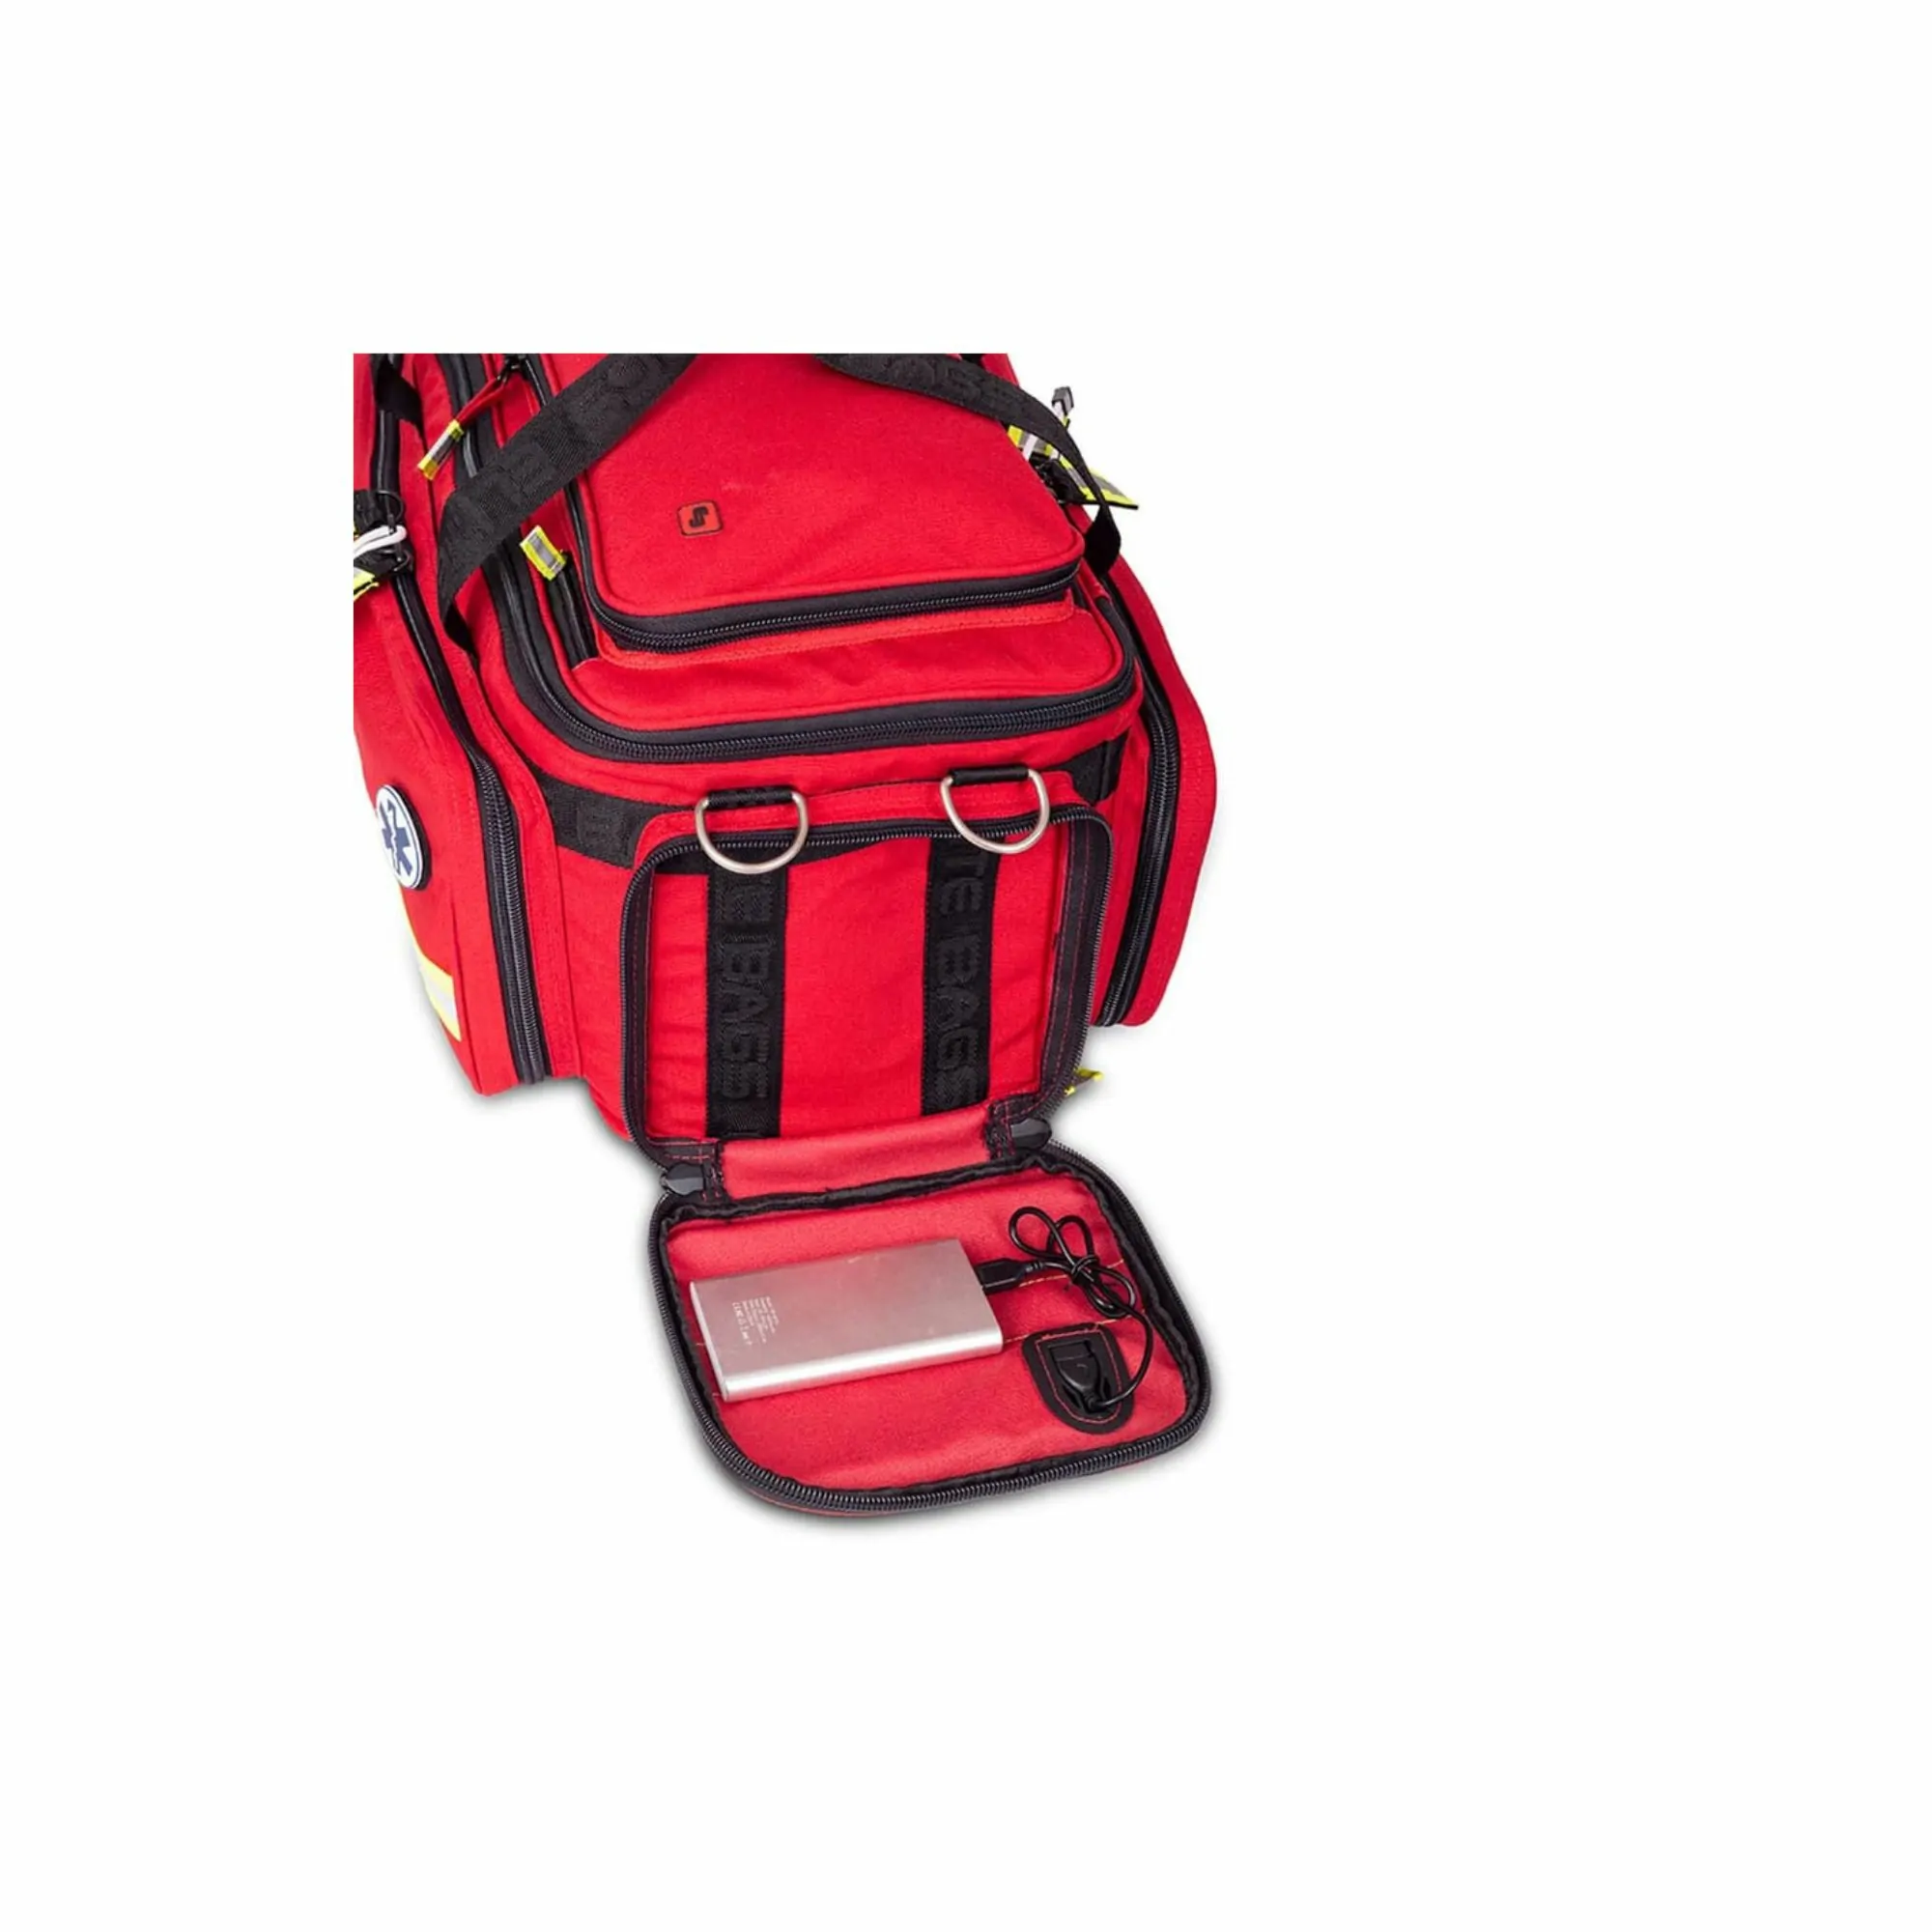 Sac à dos Urgence CRITICAL - 3 modèles - Elite Bags